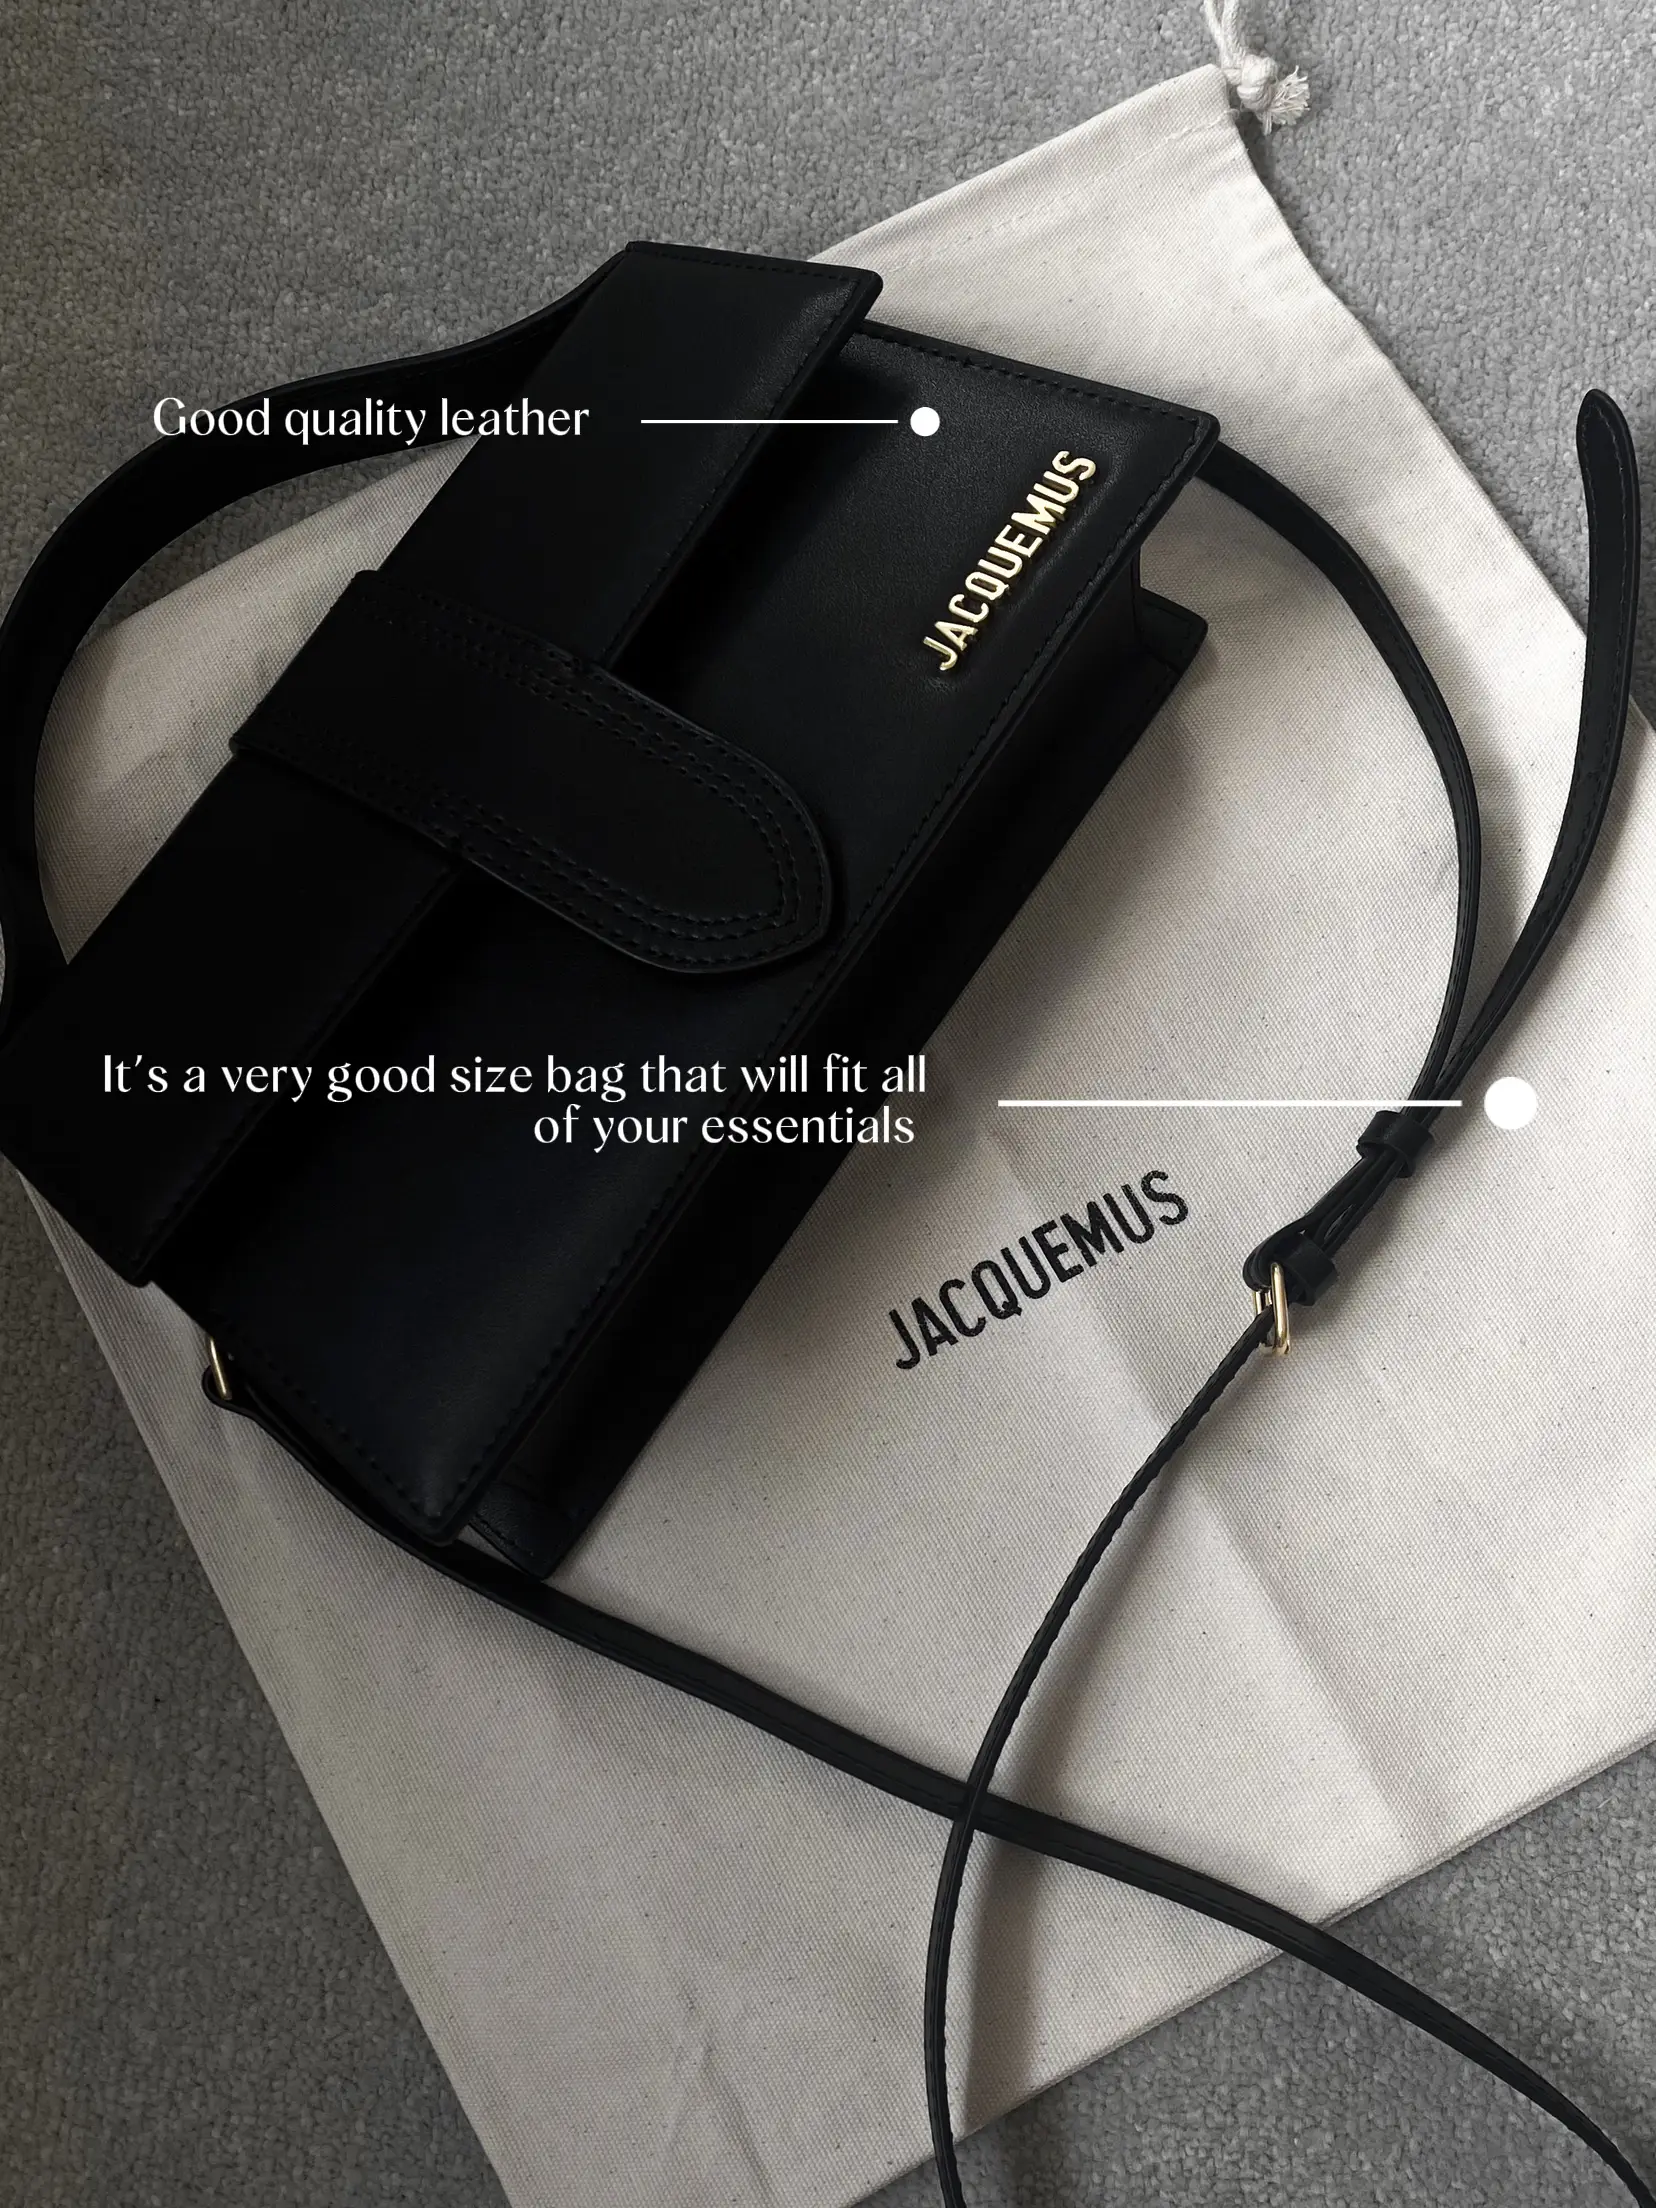 Jacquemis La Chiquito Bag Review - the gray details